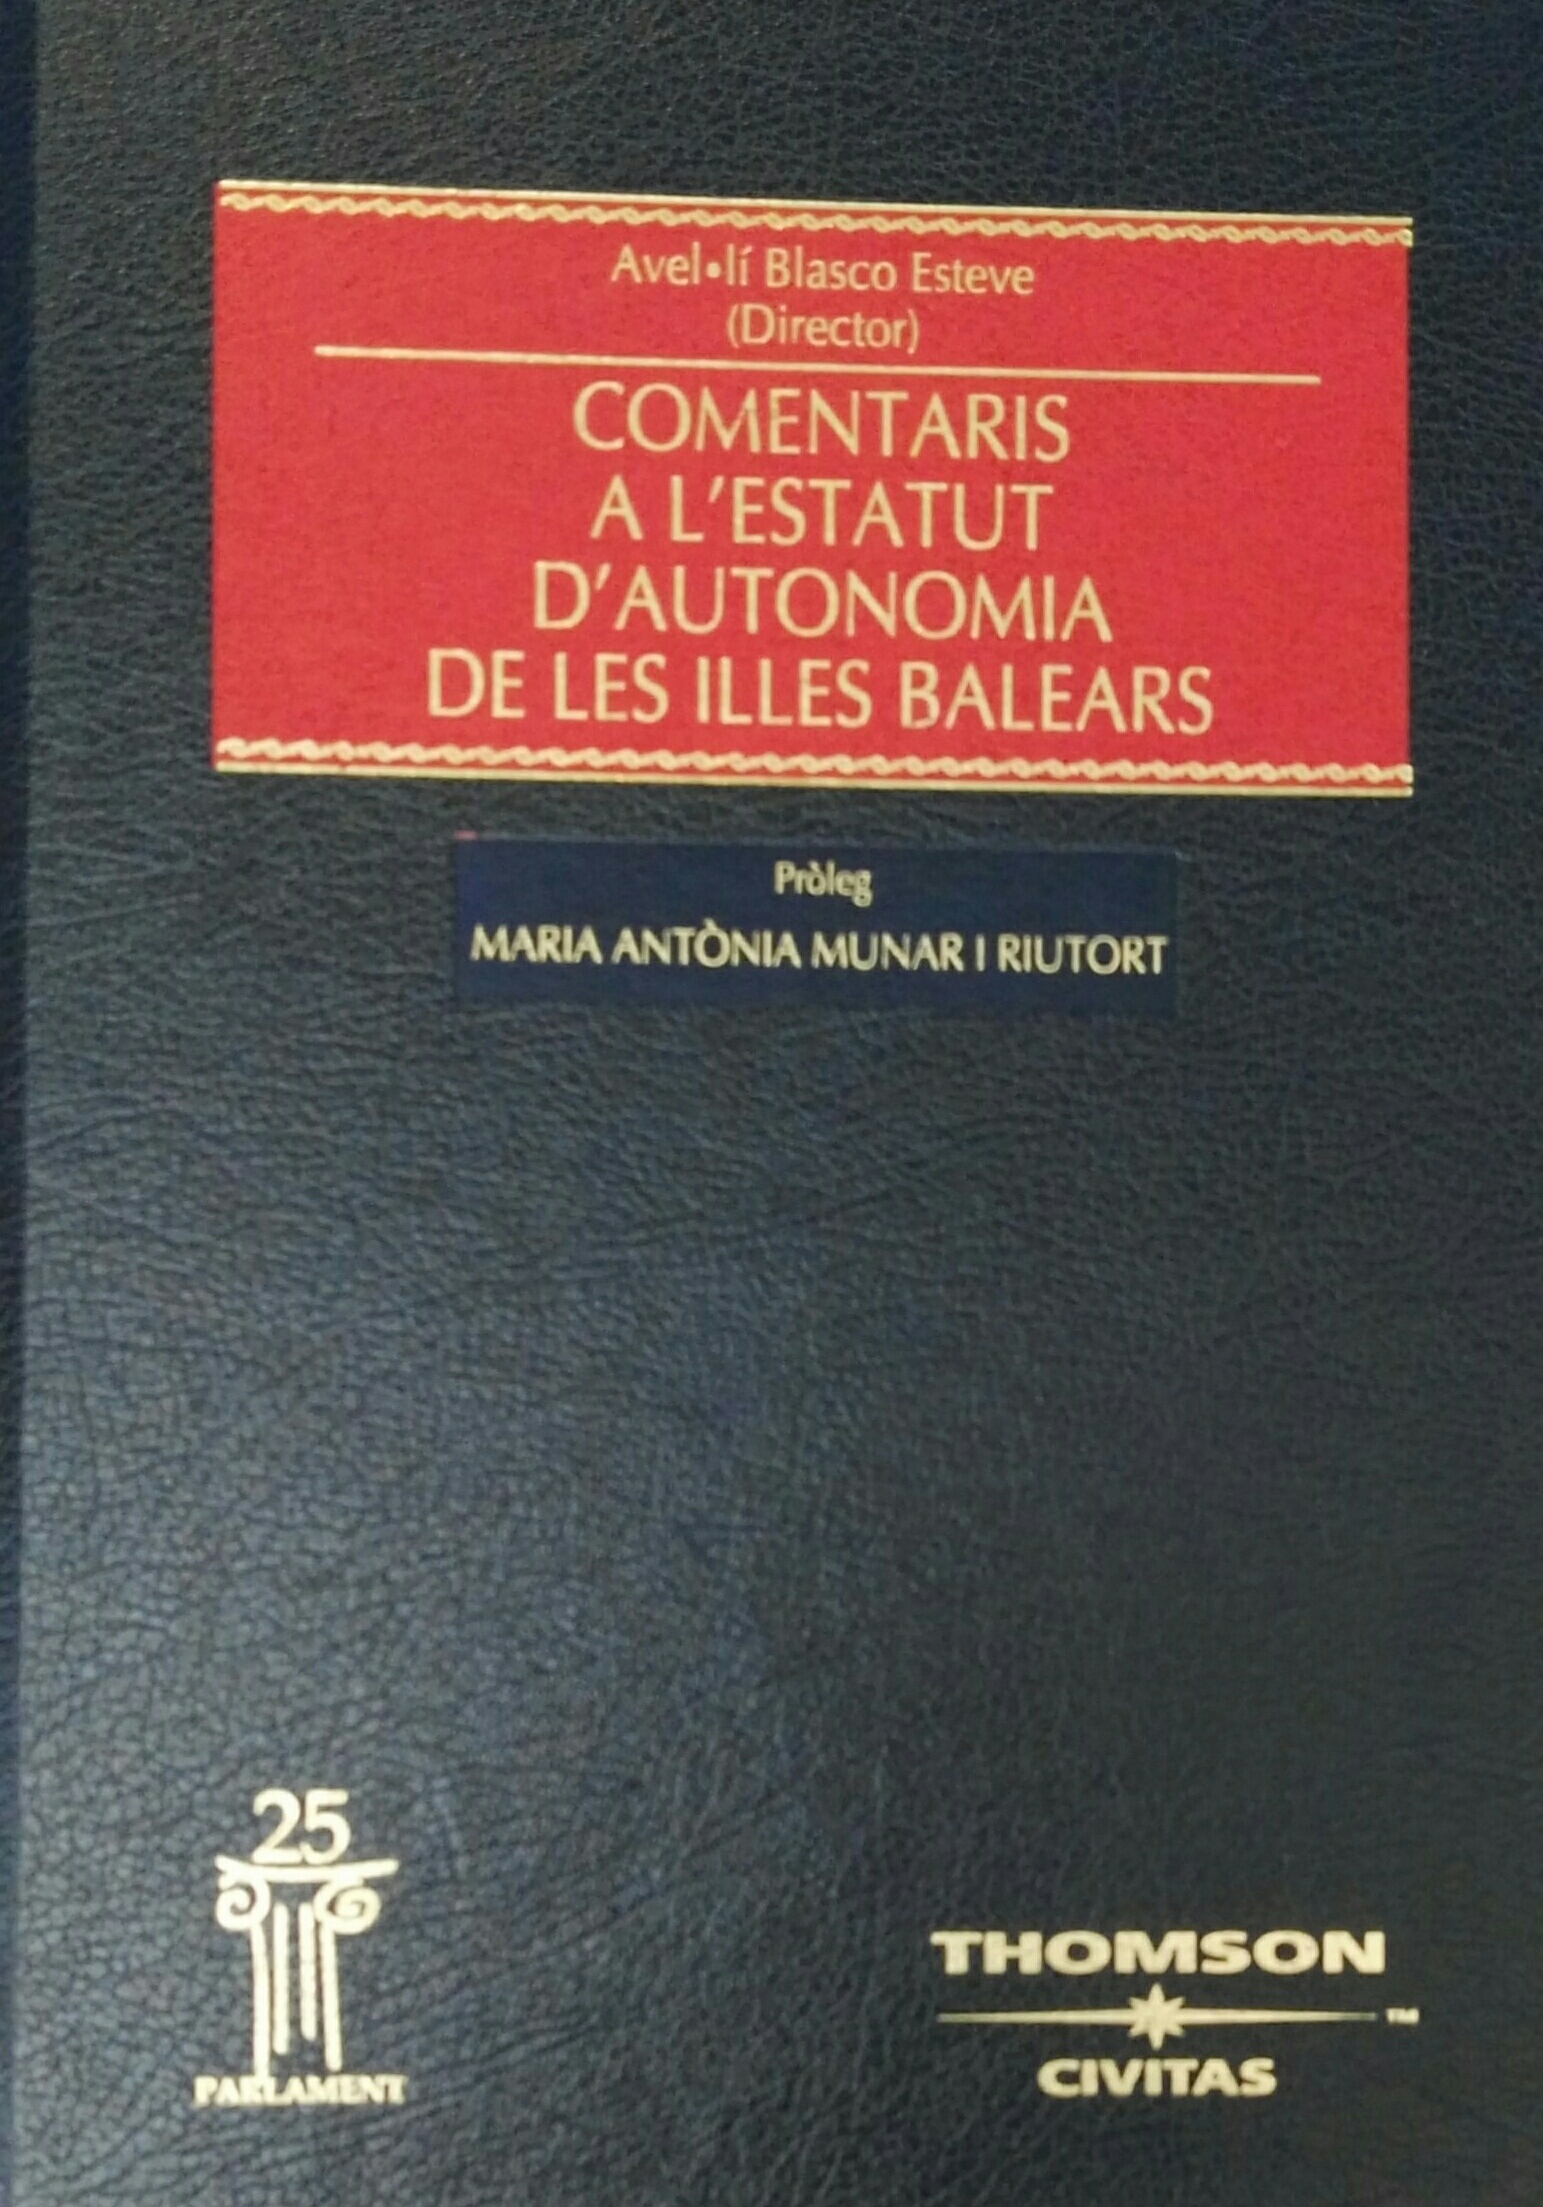 Imagen de portada del libro Comentaris a l'Estatut d'Autonomia de les Illes Balears